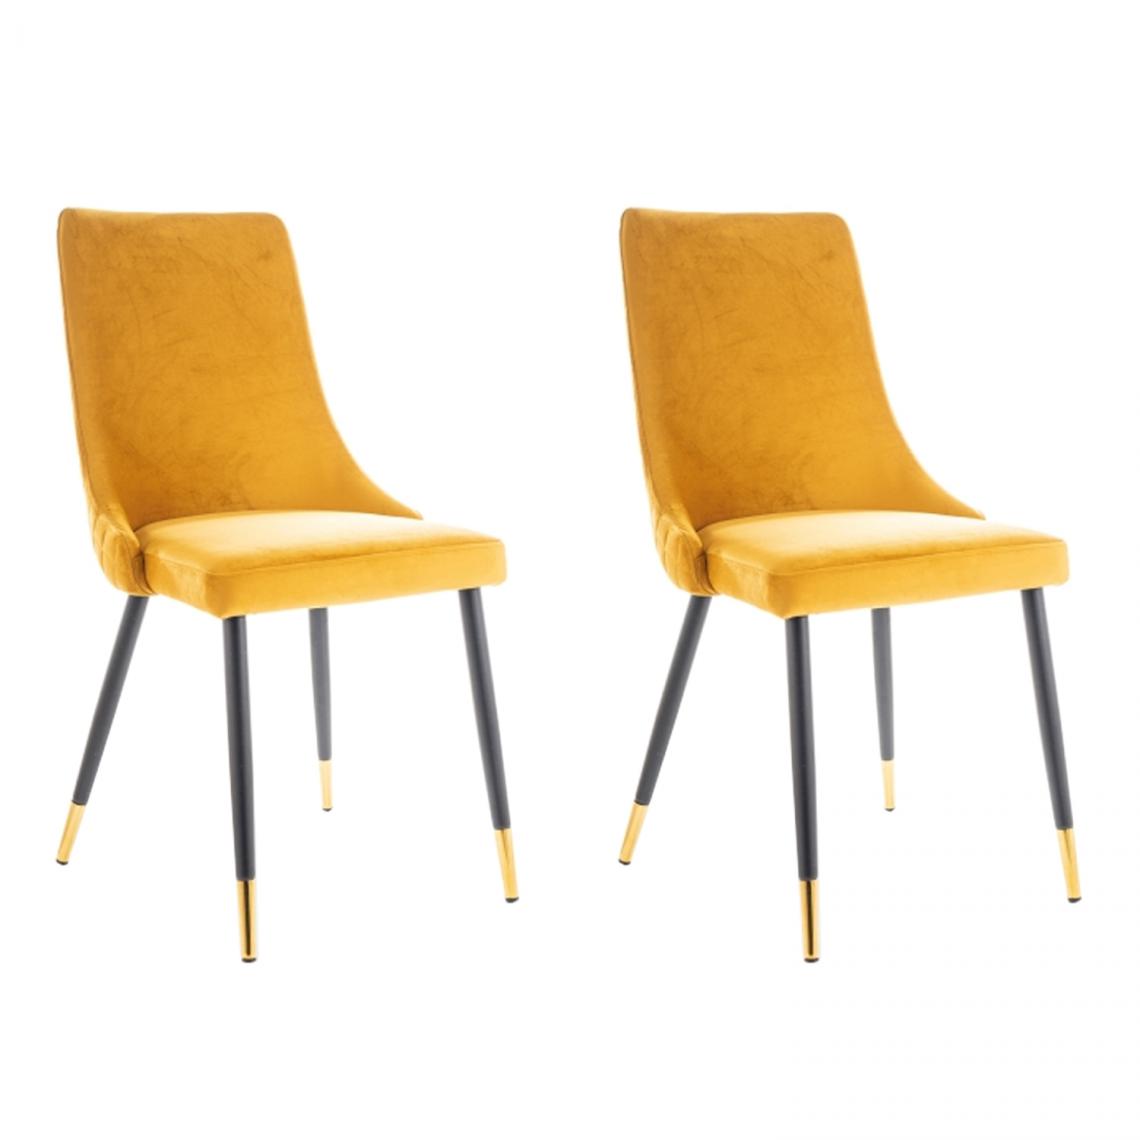 Hucoco - PIANO - Lot de 2 chaises élégantee avec coutures - Style glamour - 92x45x44 cm - Tissu velouté - Jaune - Chaises